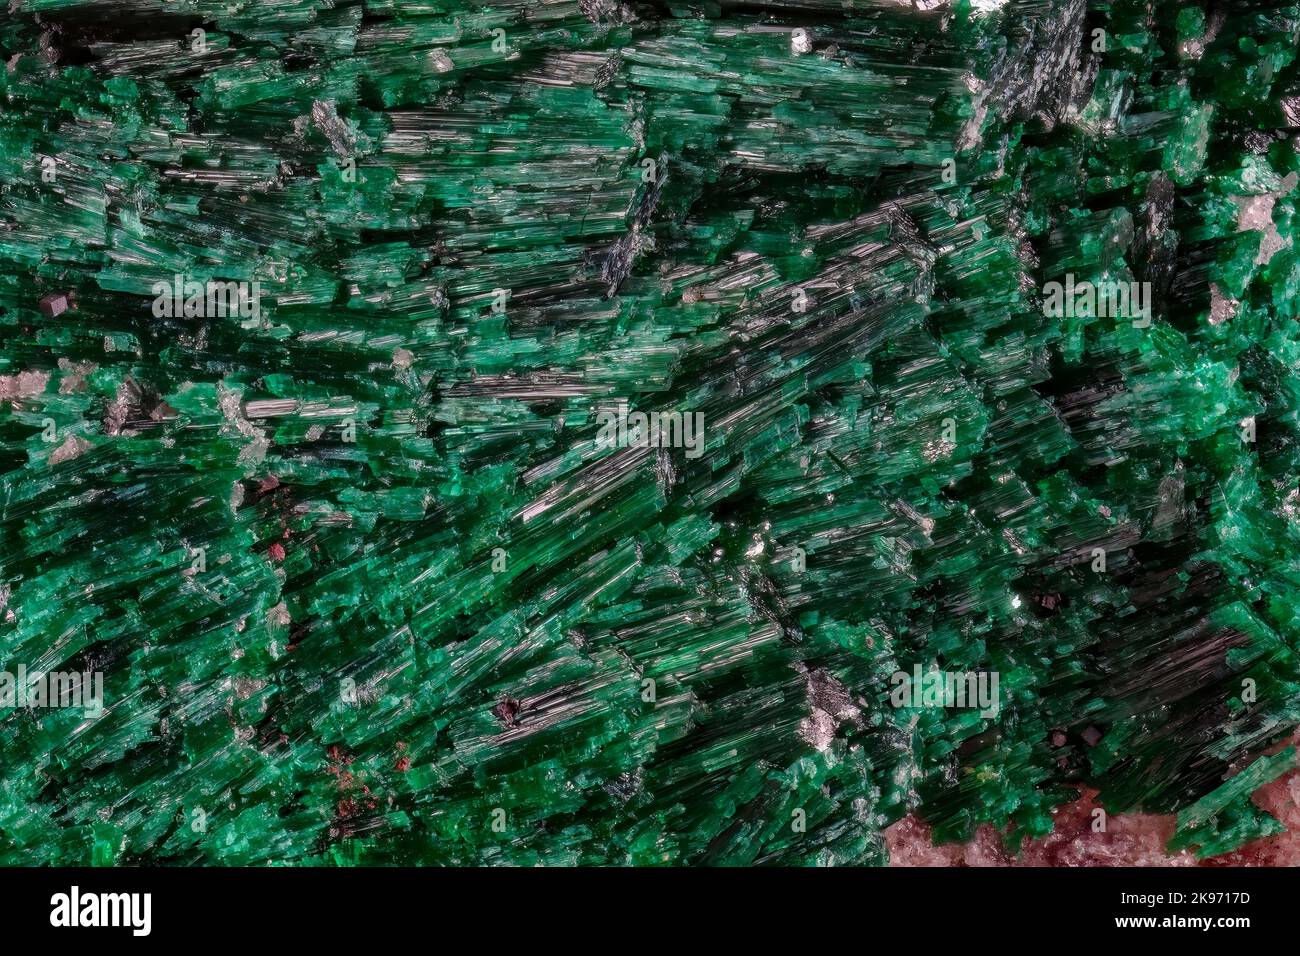 Brochantita 2x, Bisbee Co., Arizona Brochantita es un mineral sulfato, uno de un número de sulfatos cúpricos. Foto de stock